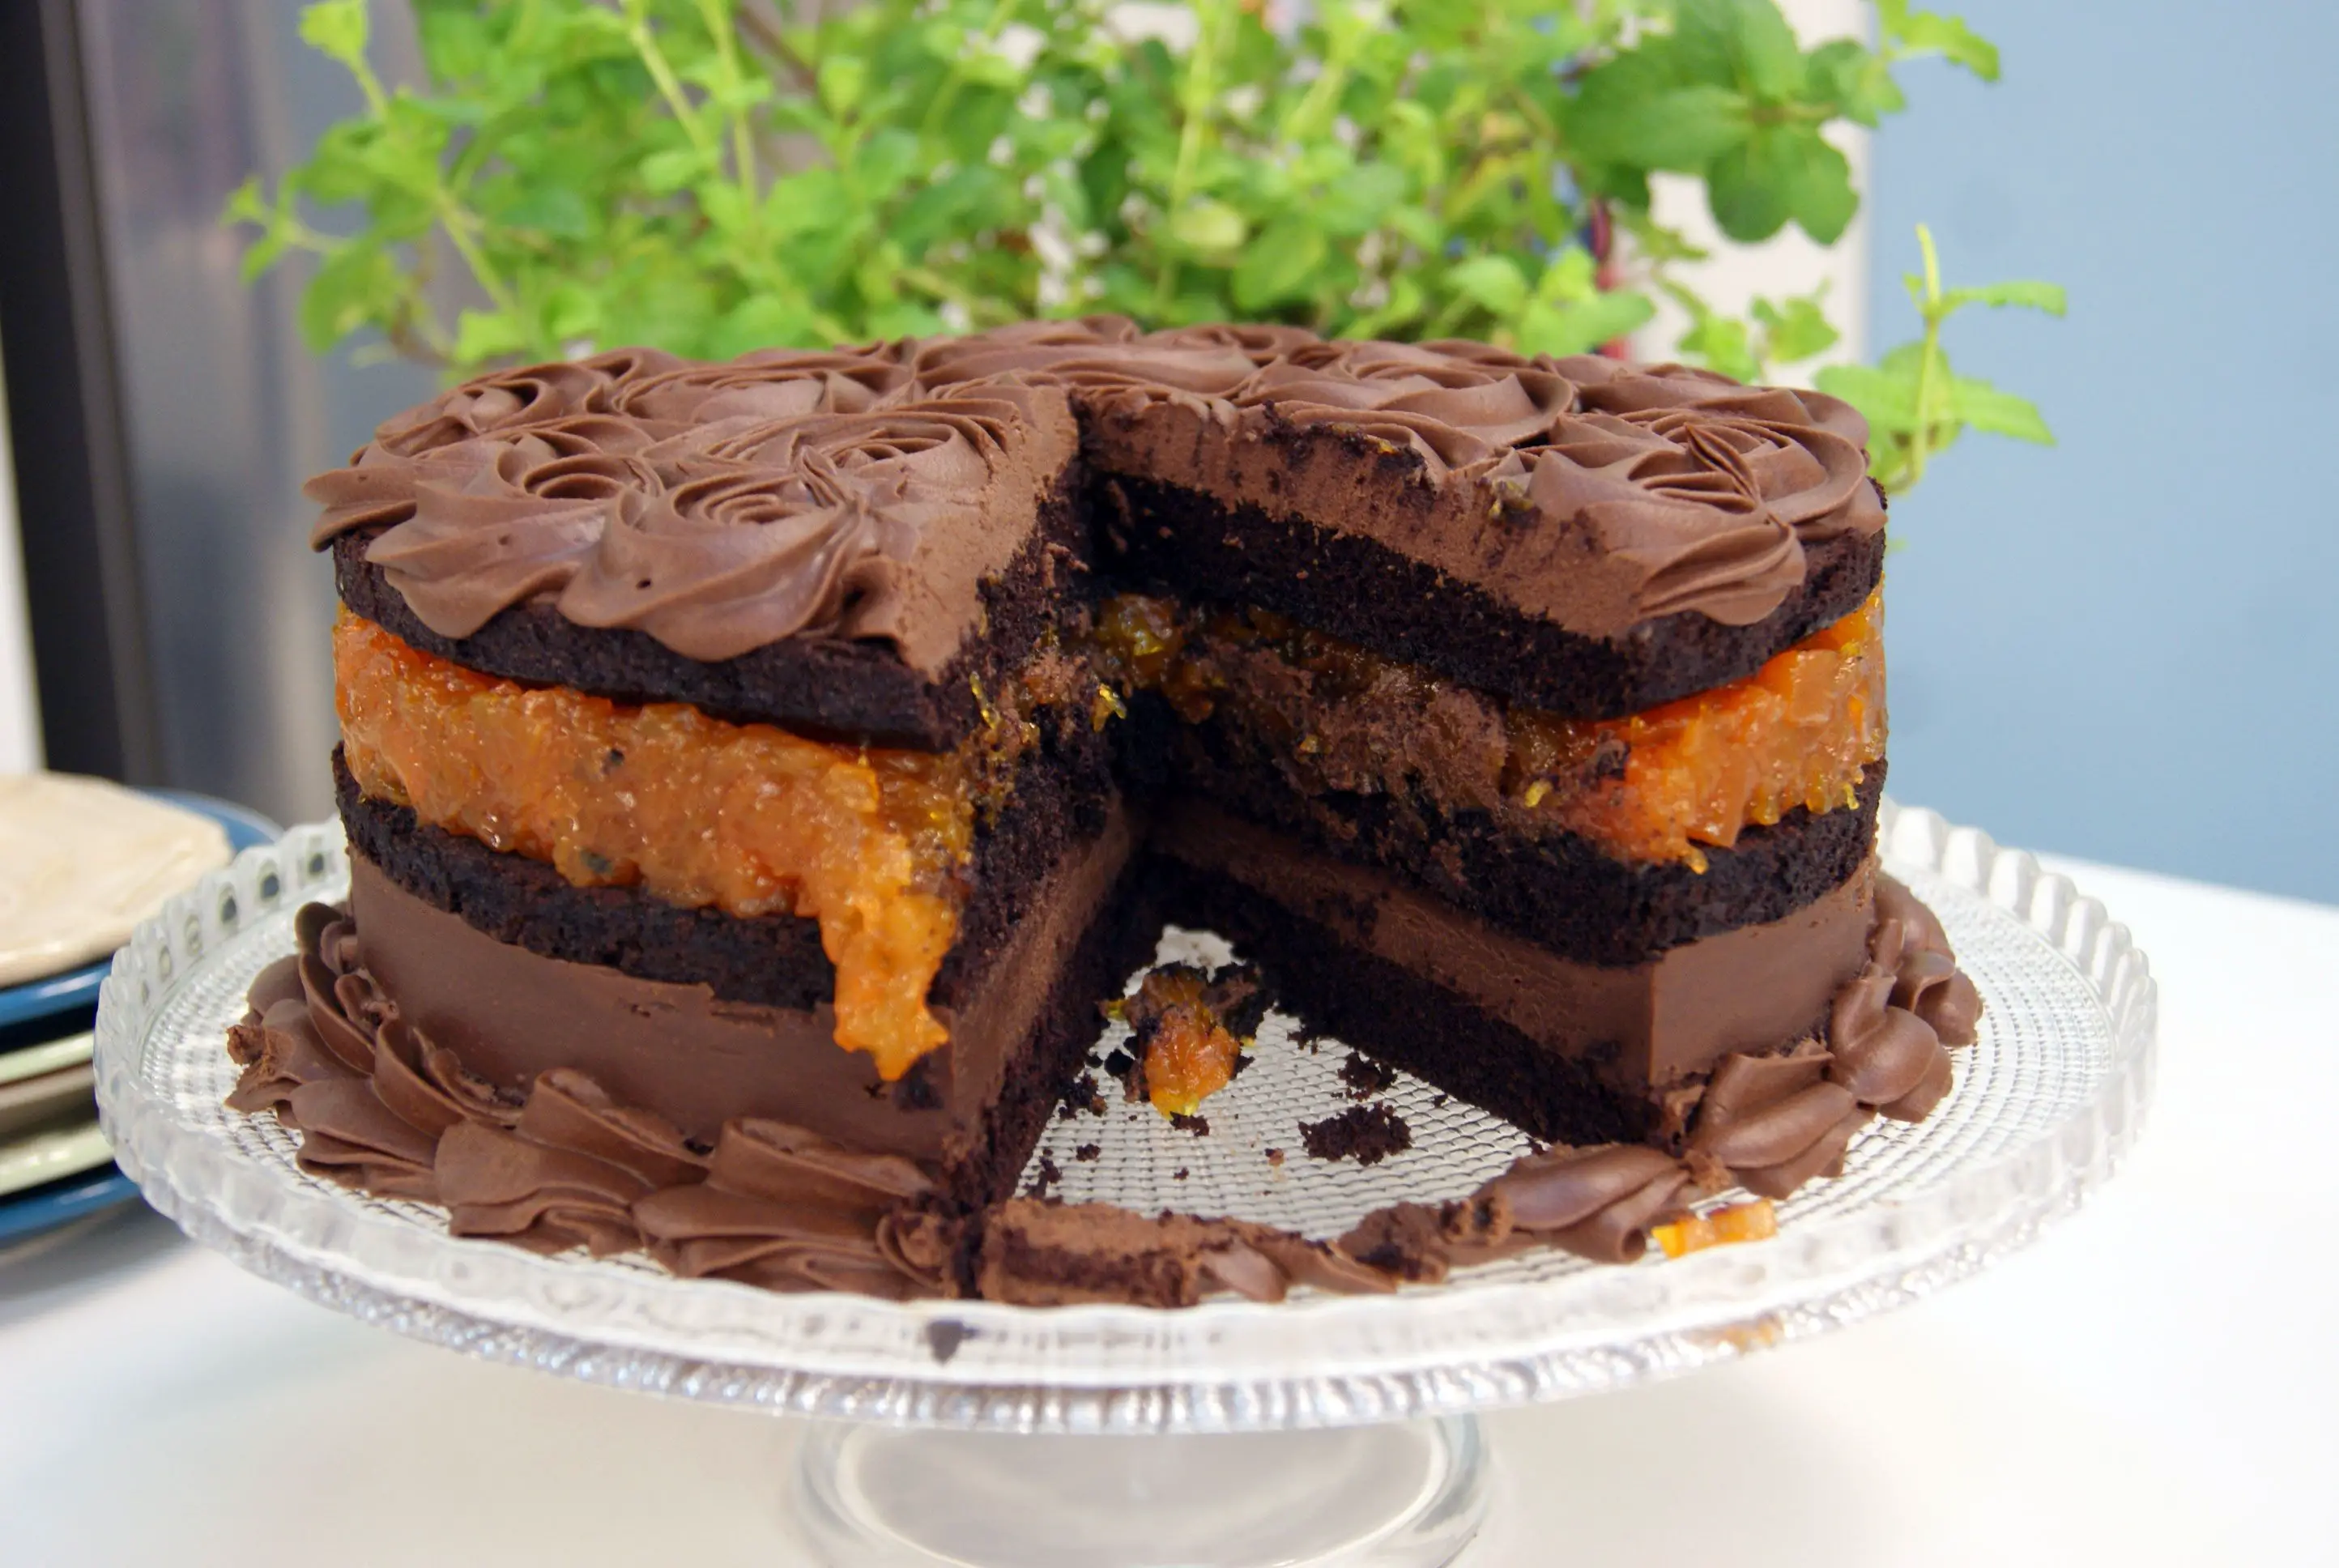 Resultado de imagem para bolo de chocolate com doce de abobora